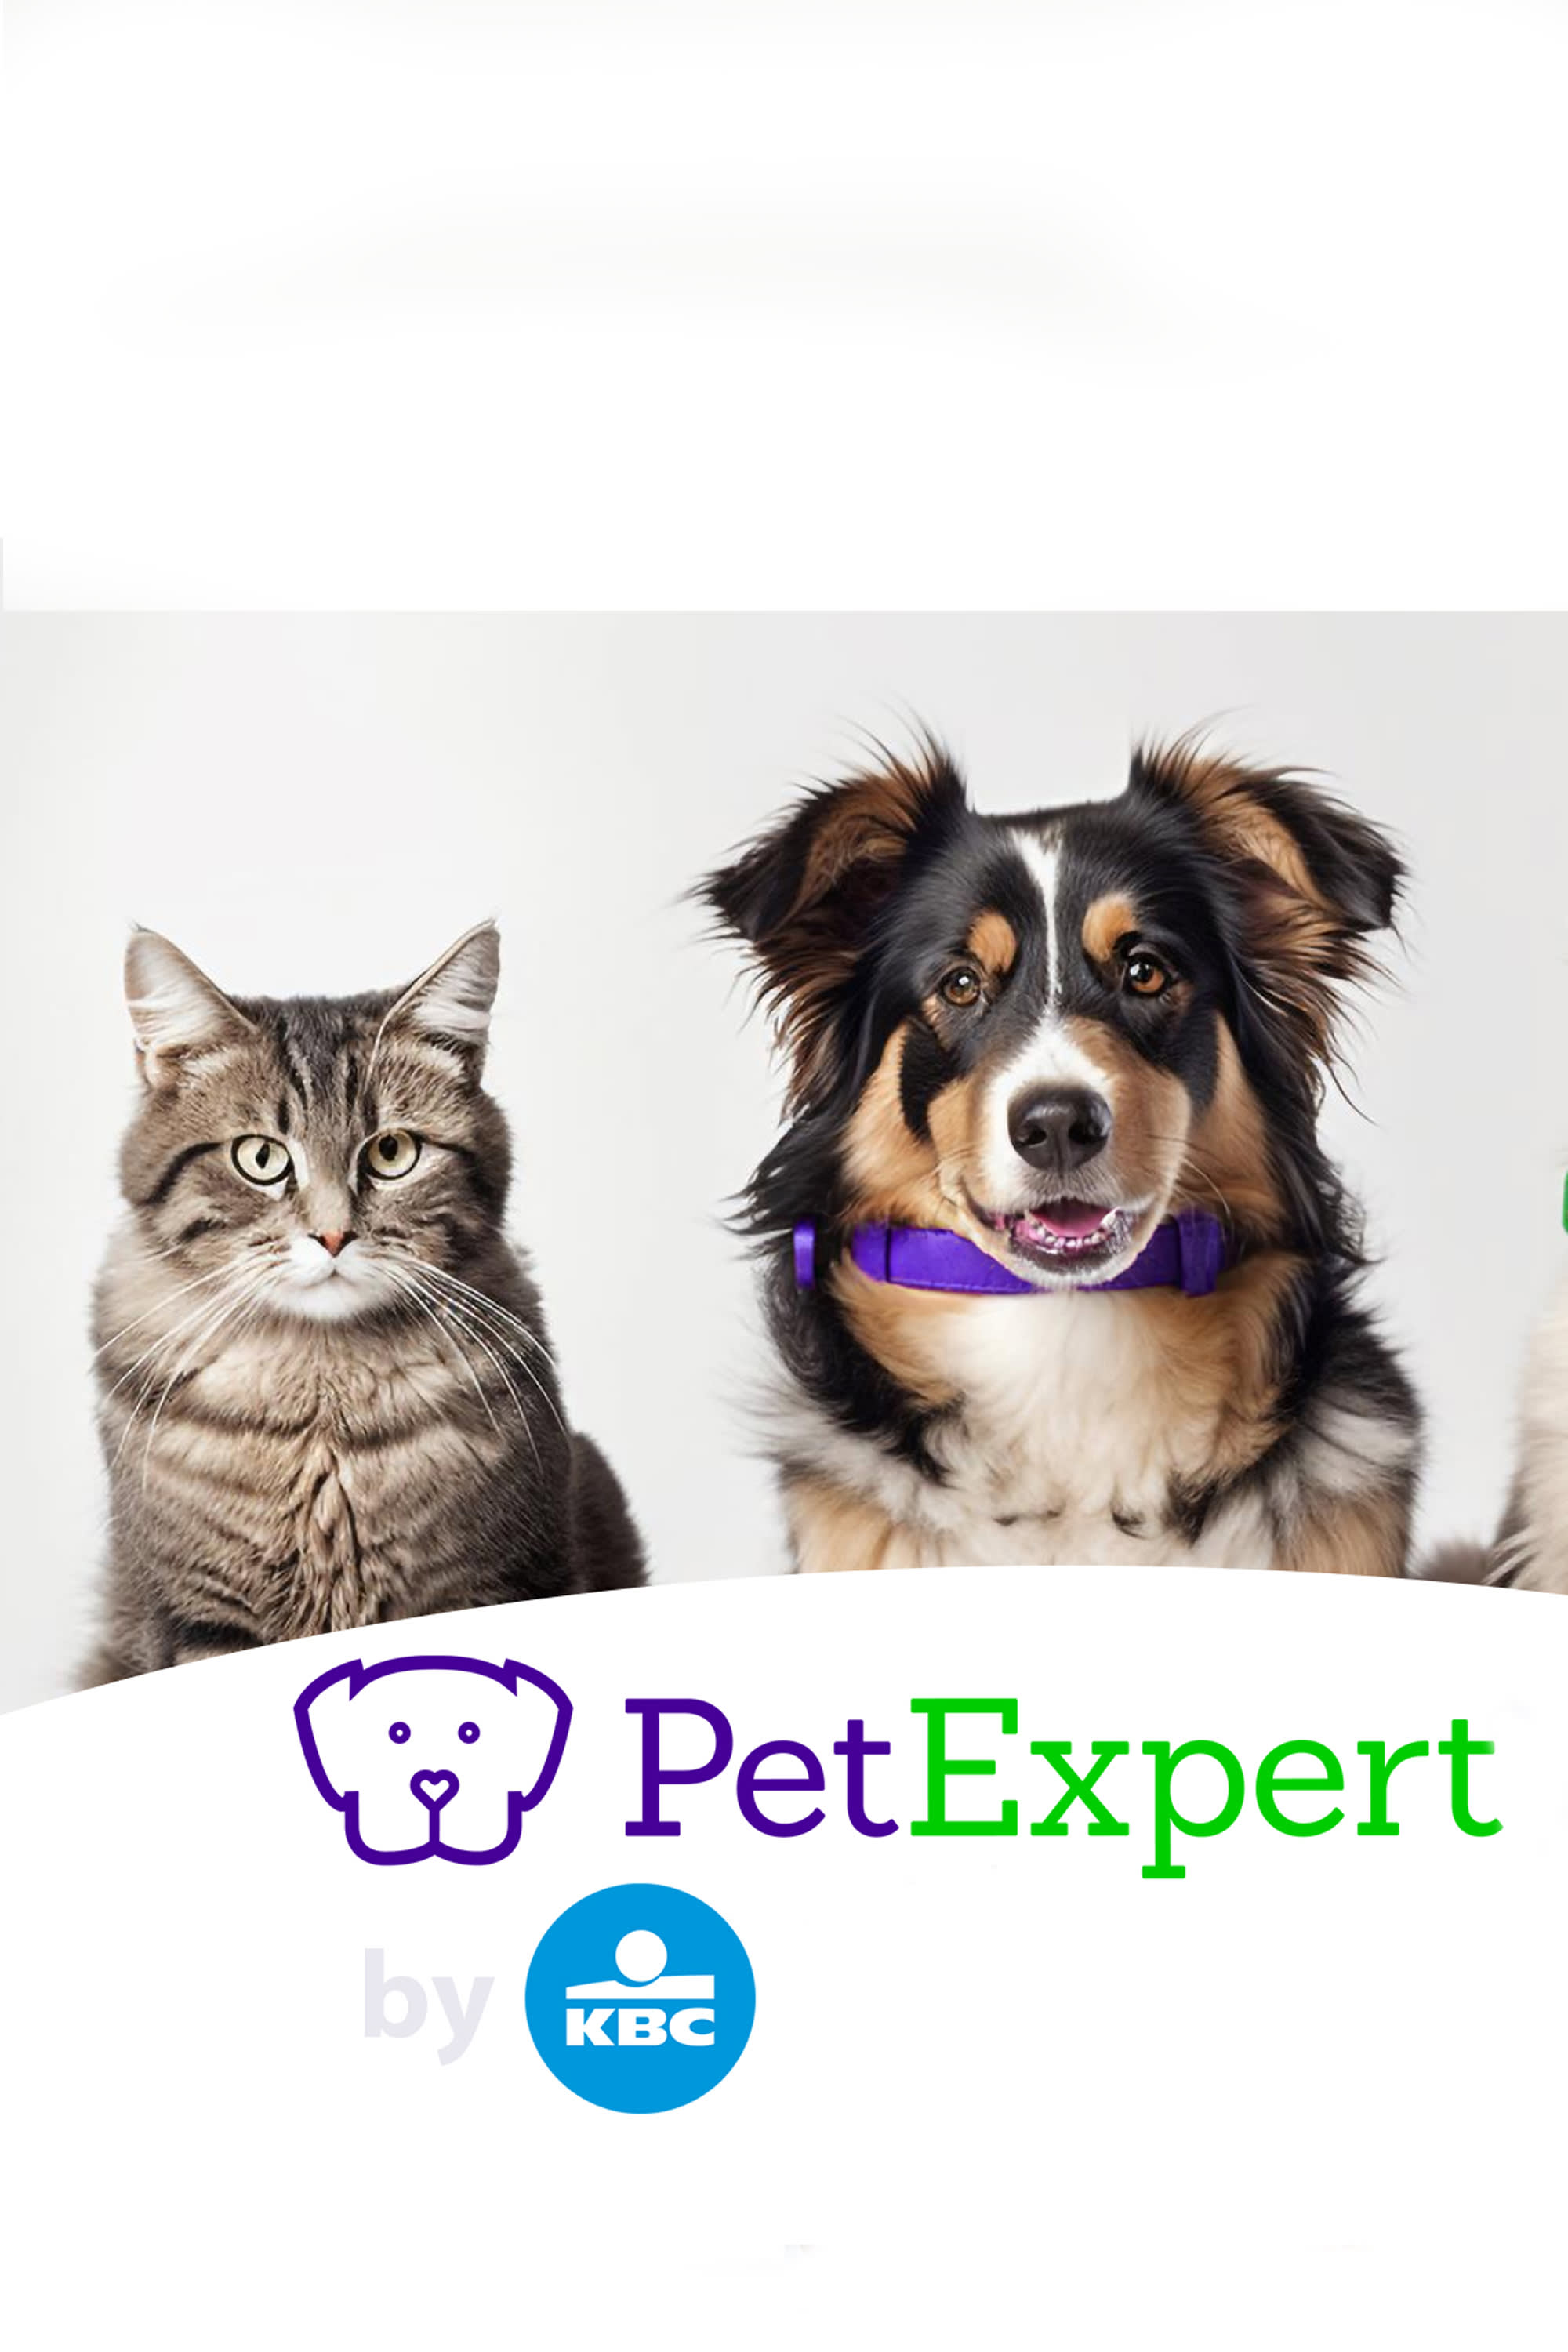 Nieuw! Verzeker je hond of kat met PetExpert by KBC